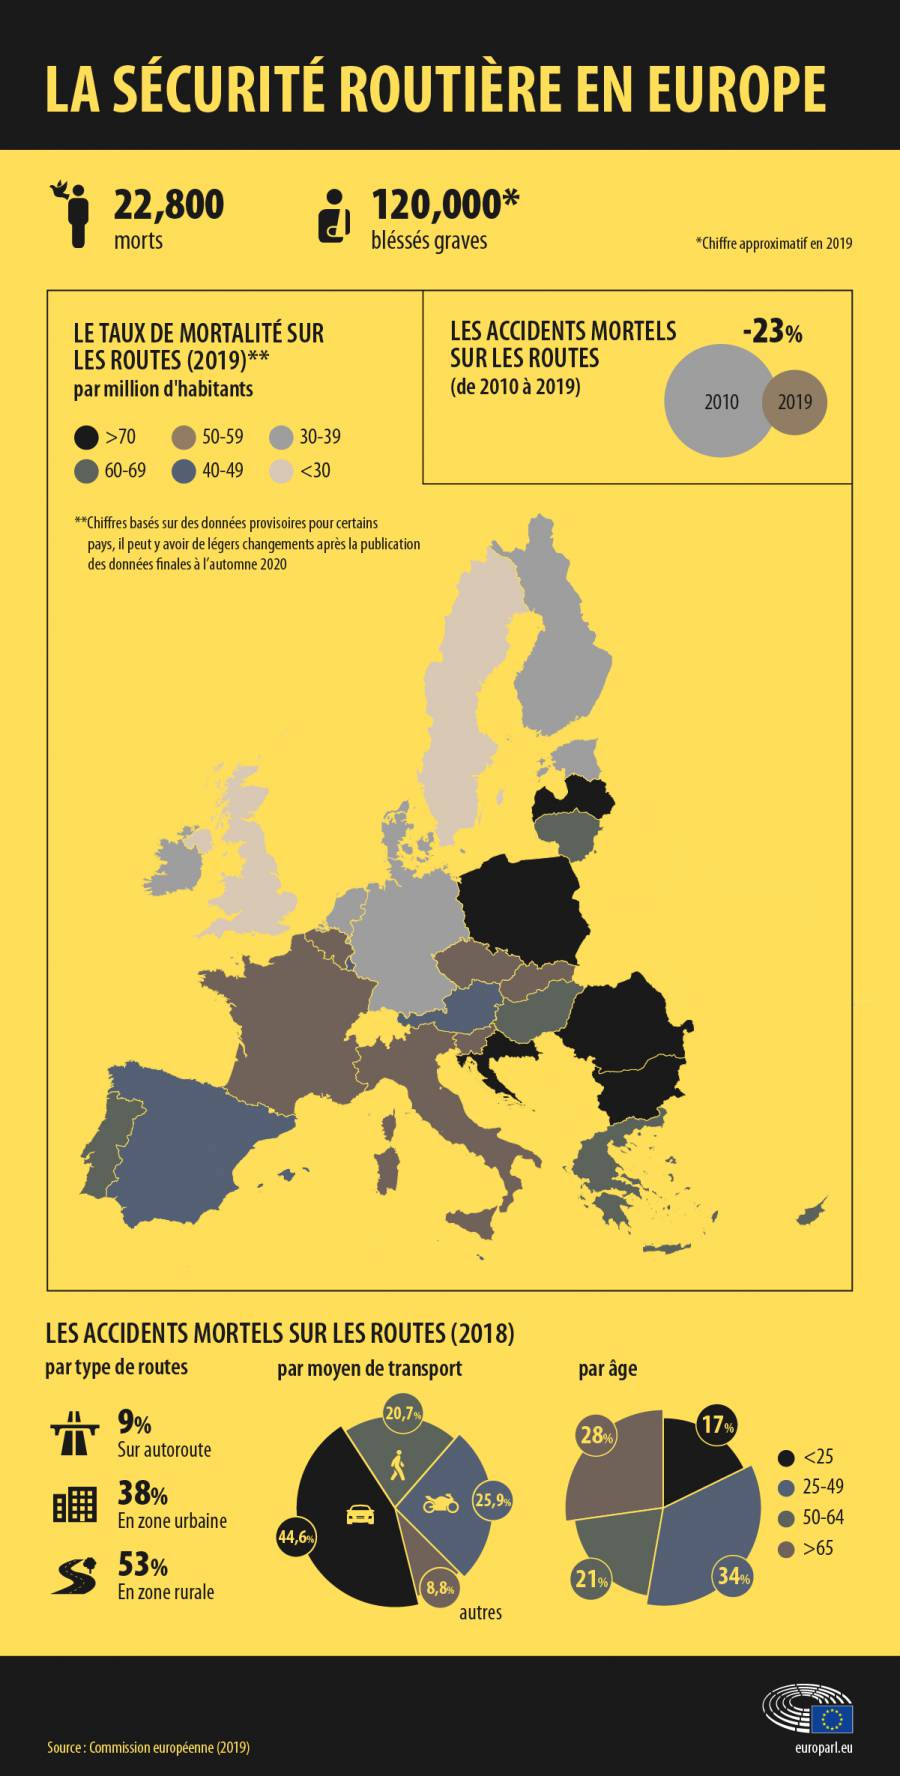  - Décès sur les routes en Europe : les chiffres (infographie)